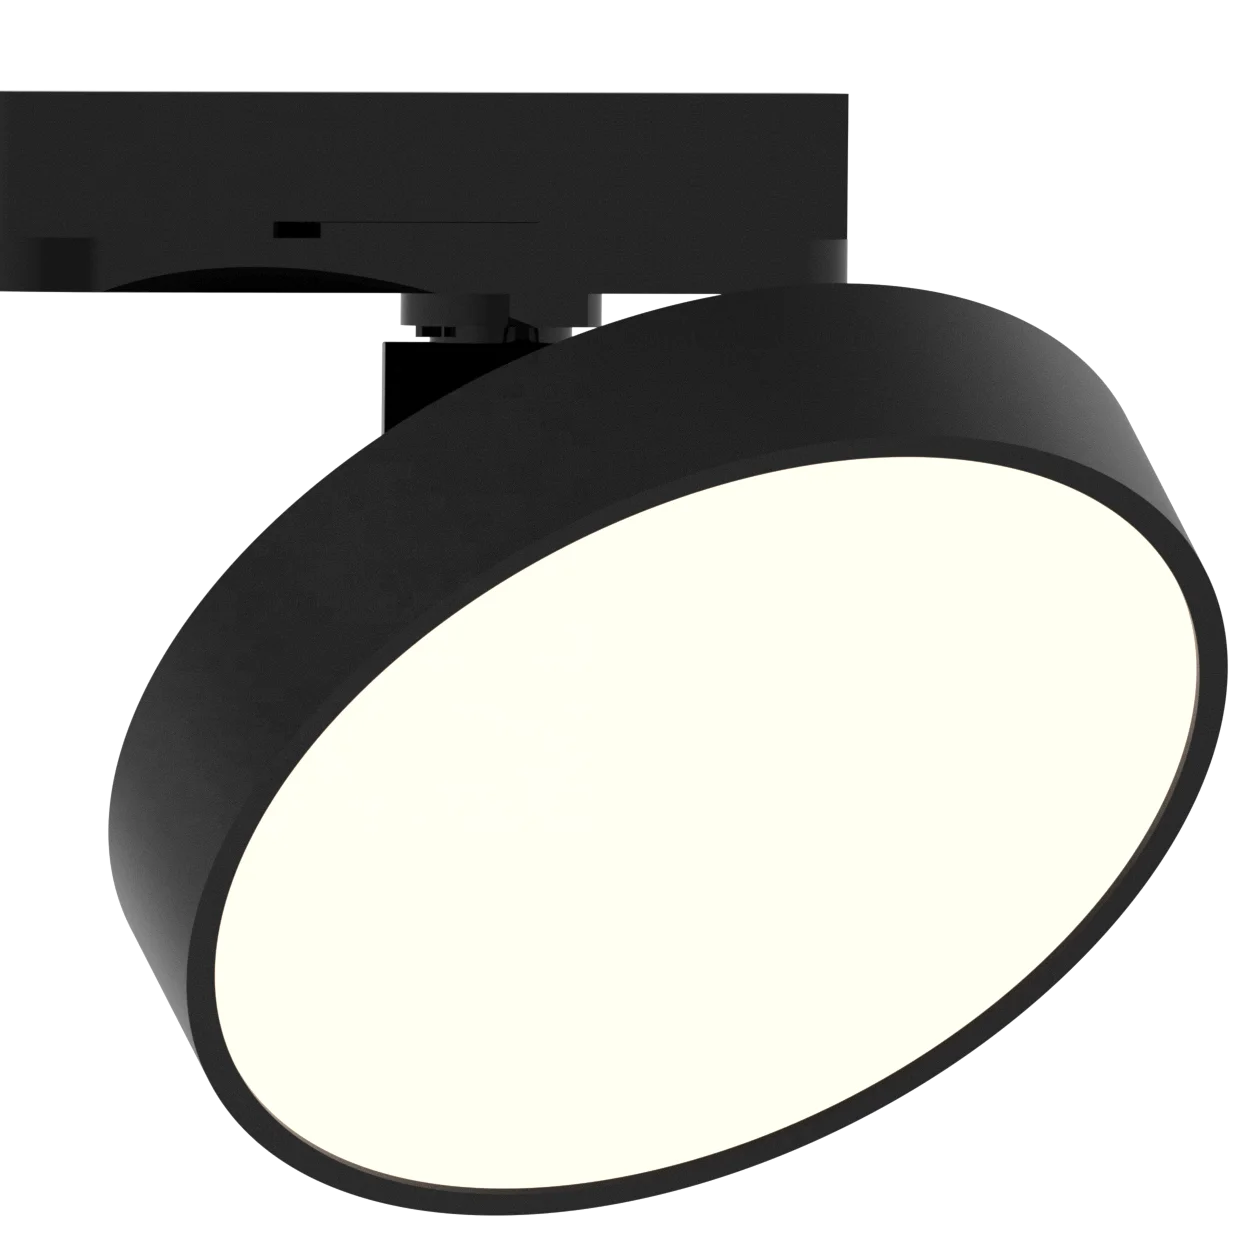 2020 Nordic modern design  lamp  LED Track Light integrating home lighting